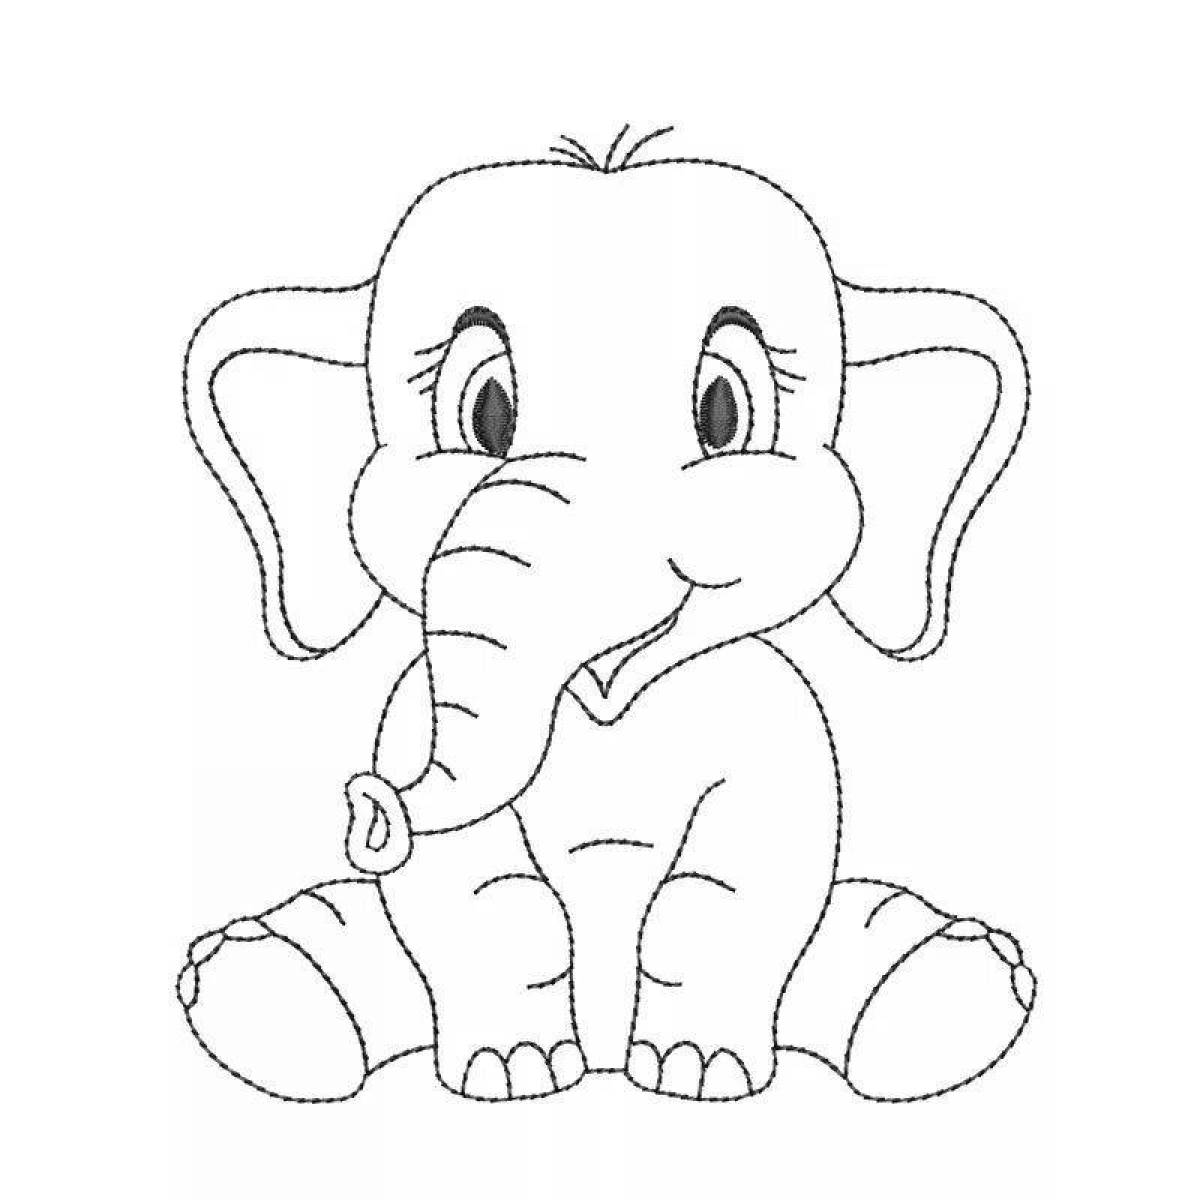 Увлекательная раскраска слона для детей 3-4 лет